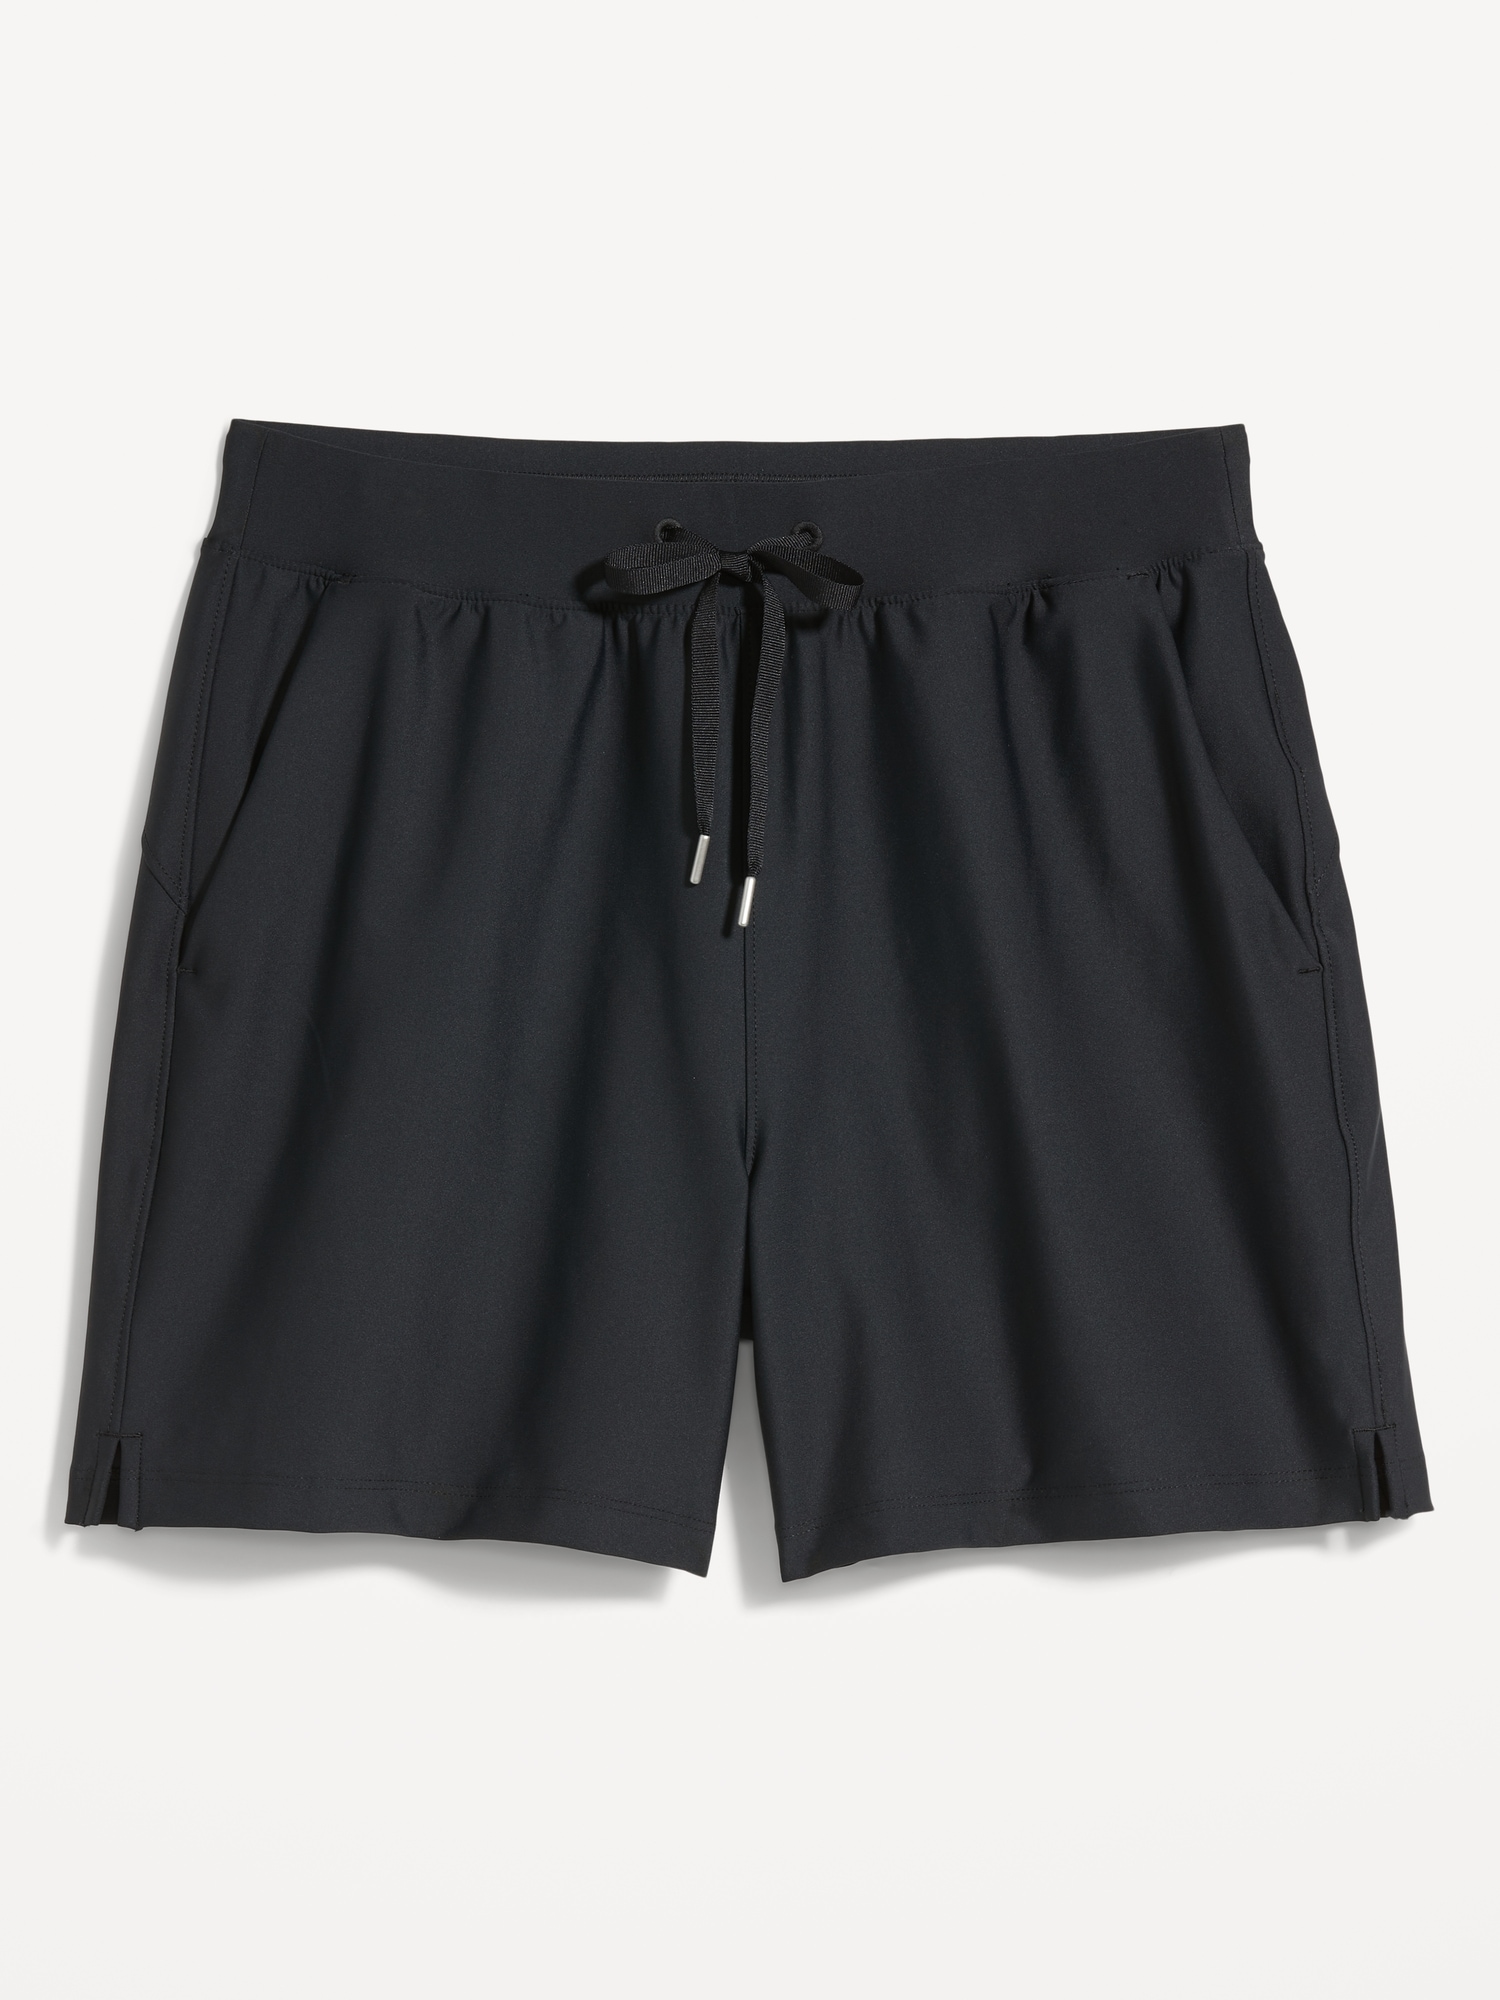 Go Run Shorts -- 5-inch inseam, Old Navy